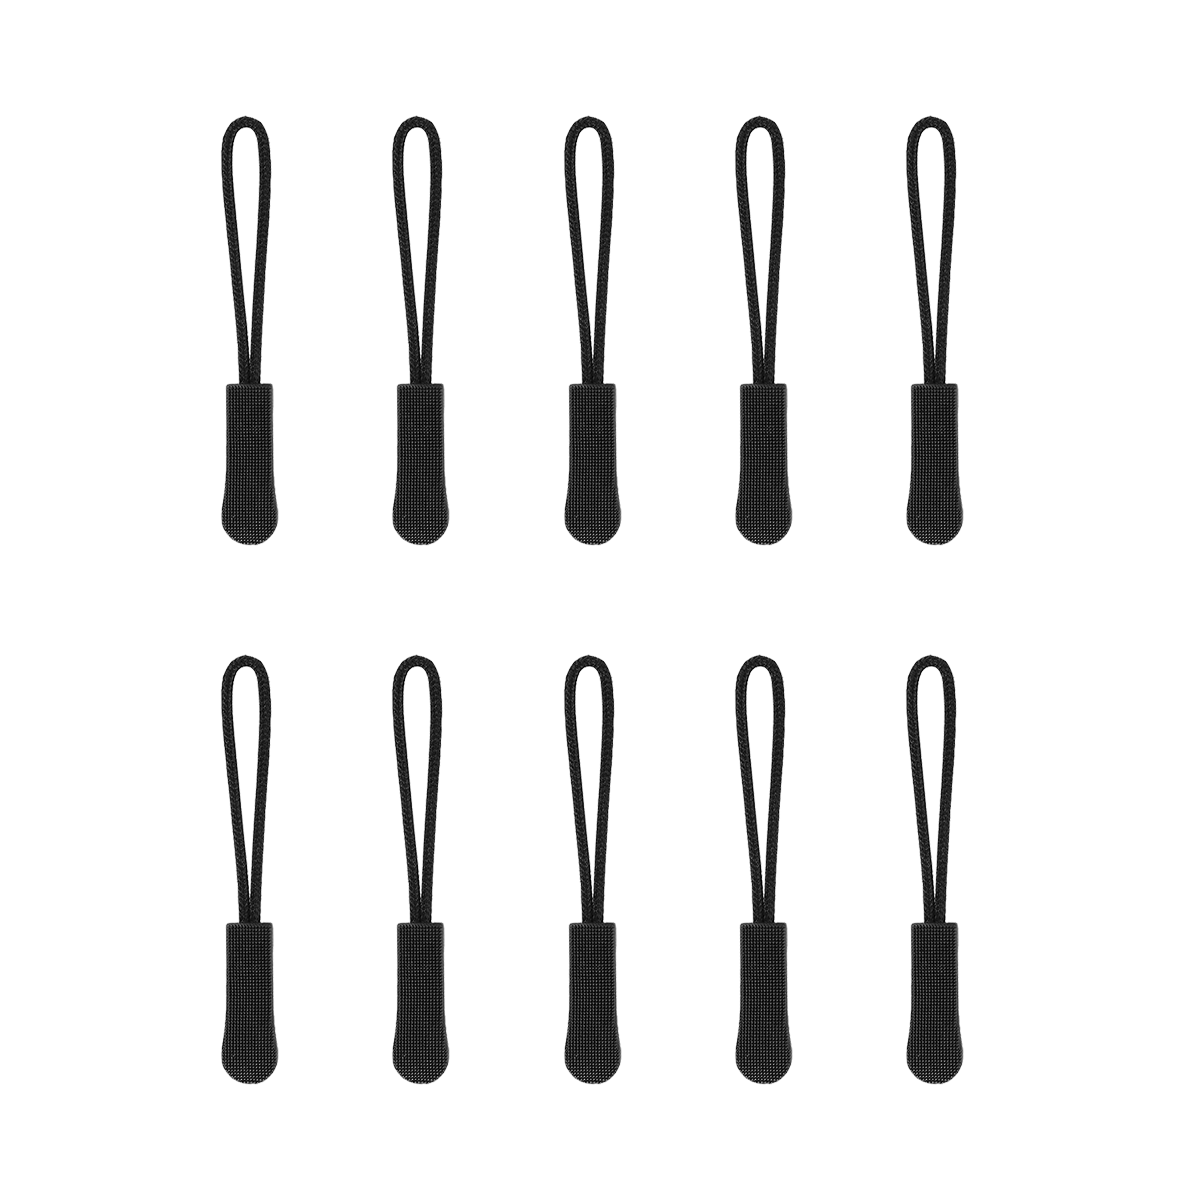 50 PCS Zipper Pulls, Replacement Nylon Cord Zipper Extension Pulls